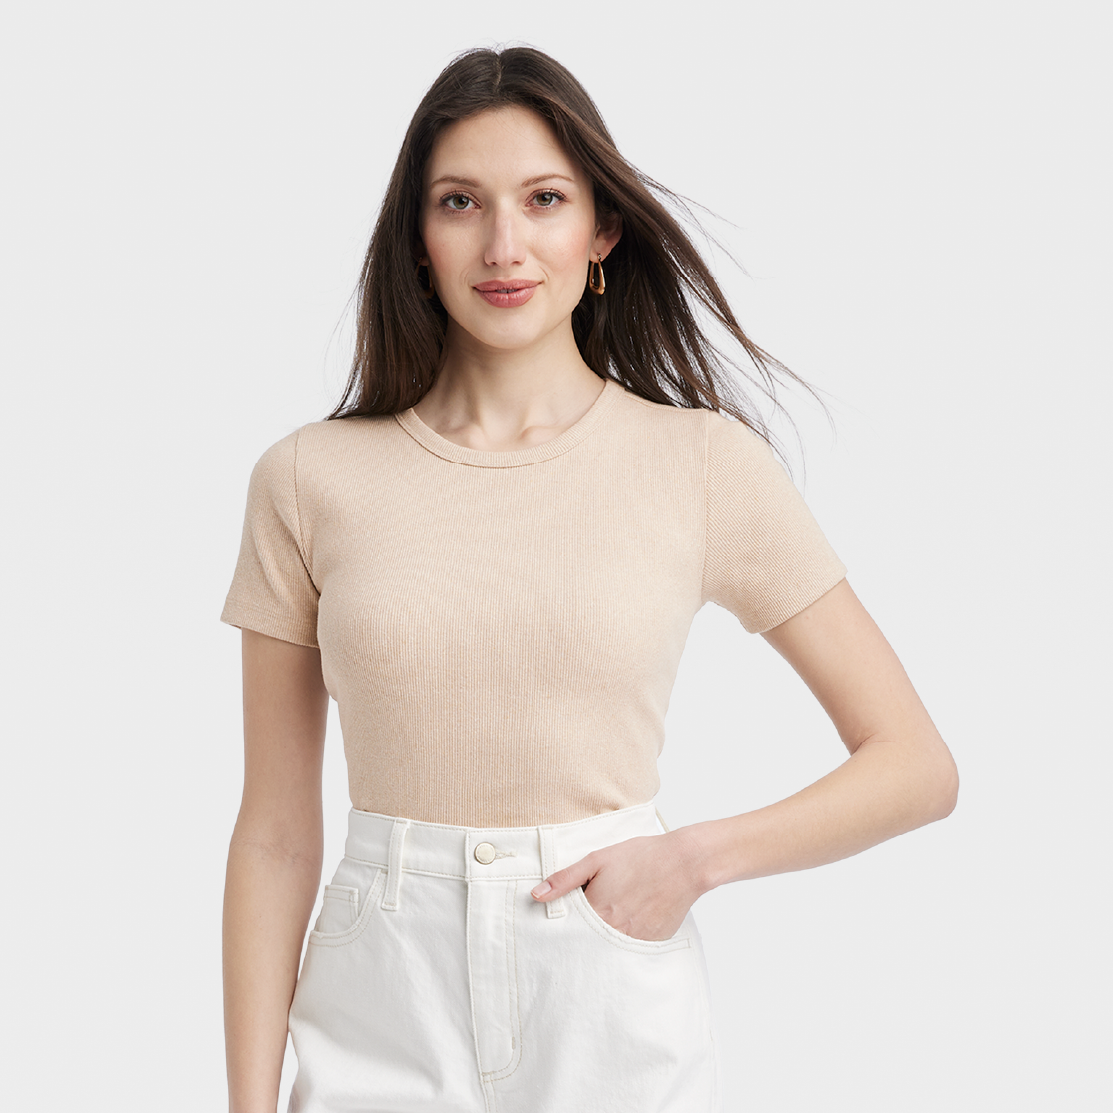 A model wearing a beige Universal Thread t-shirt.